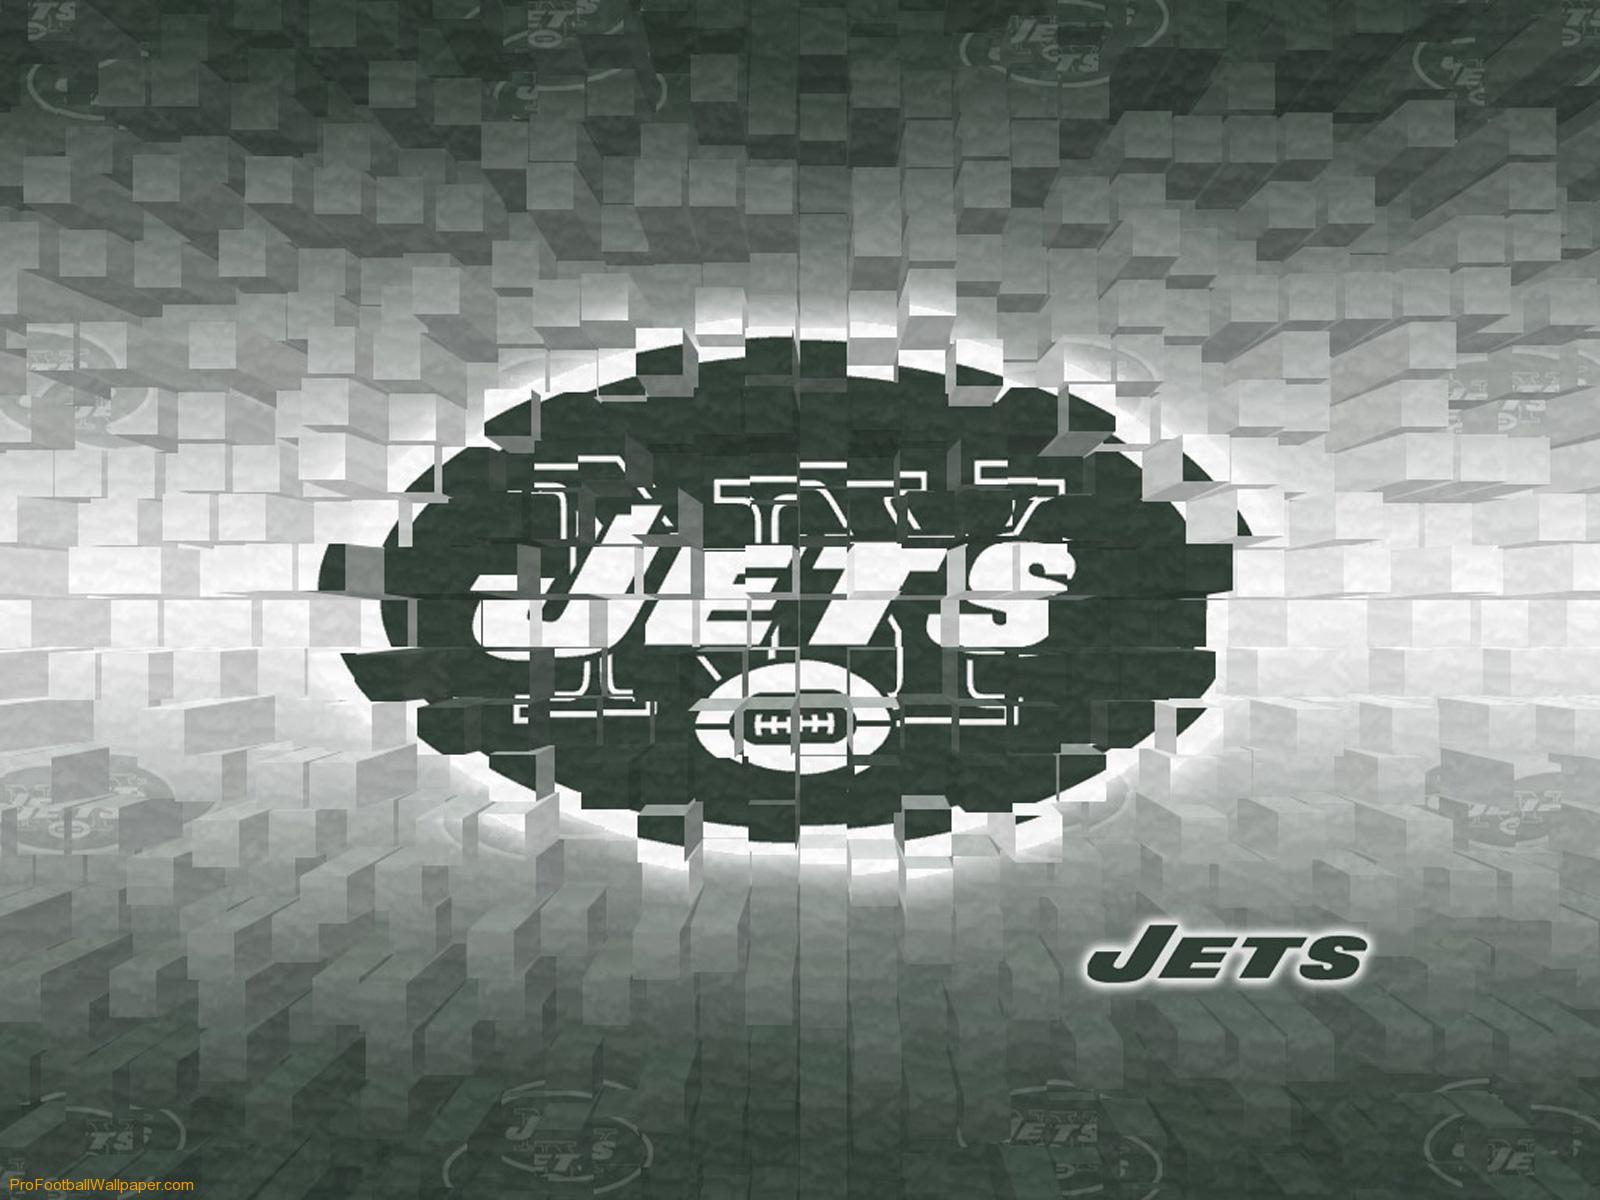 New York Jets 3D Wallpaper 178176 HD Wallpaper Res 1600x1200